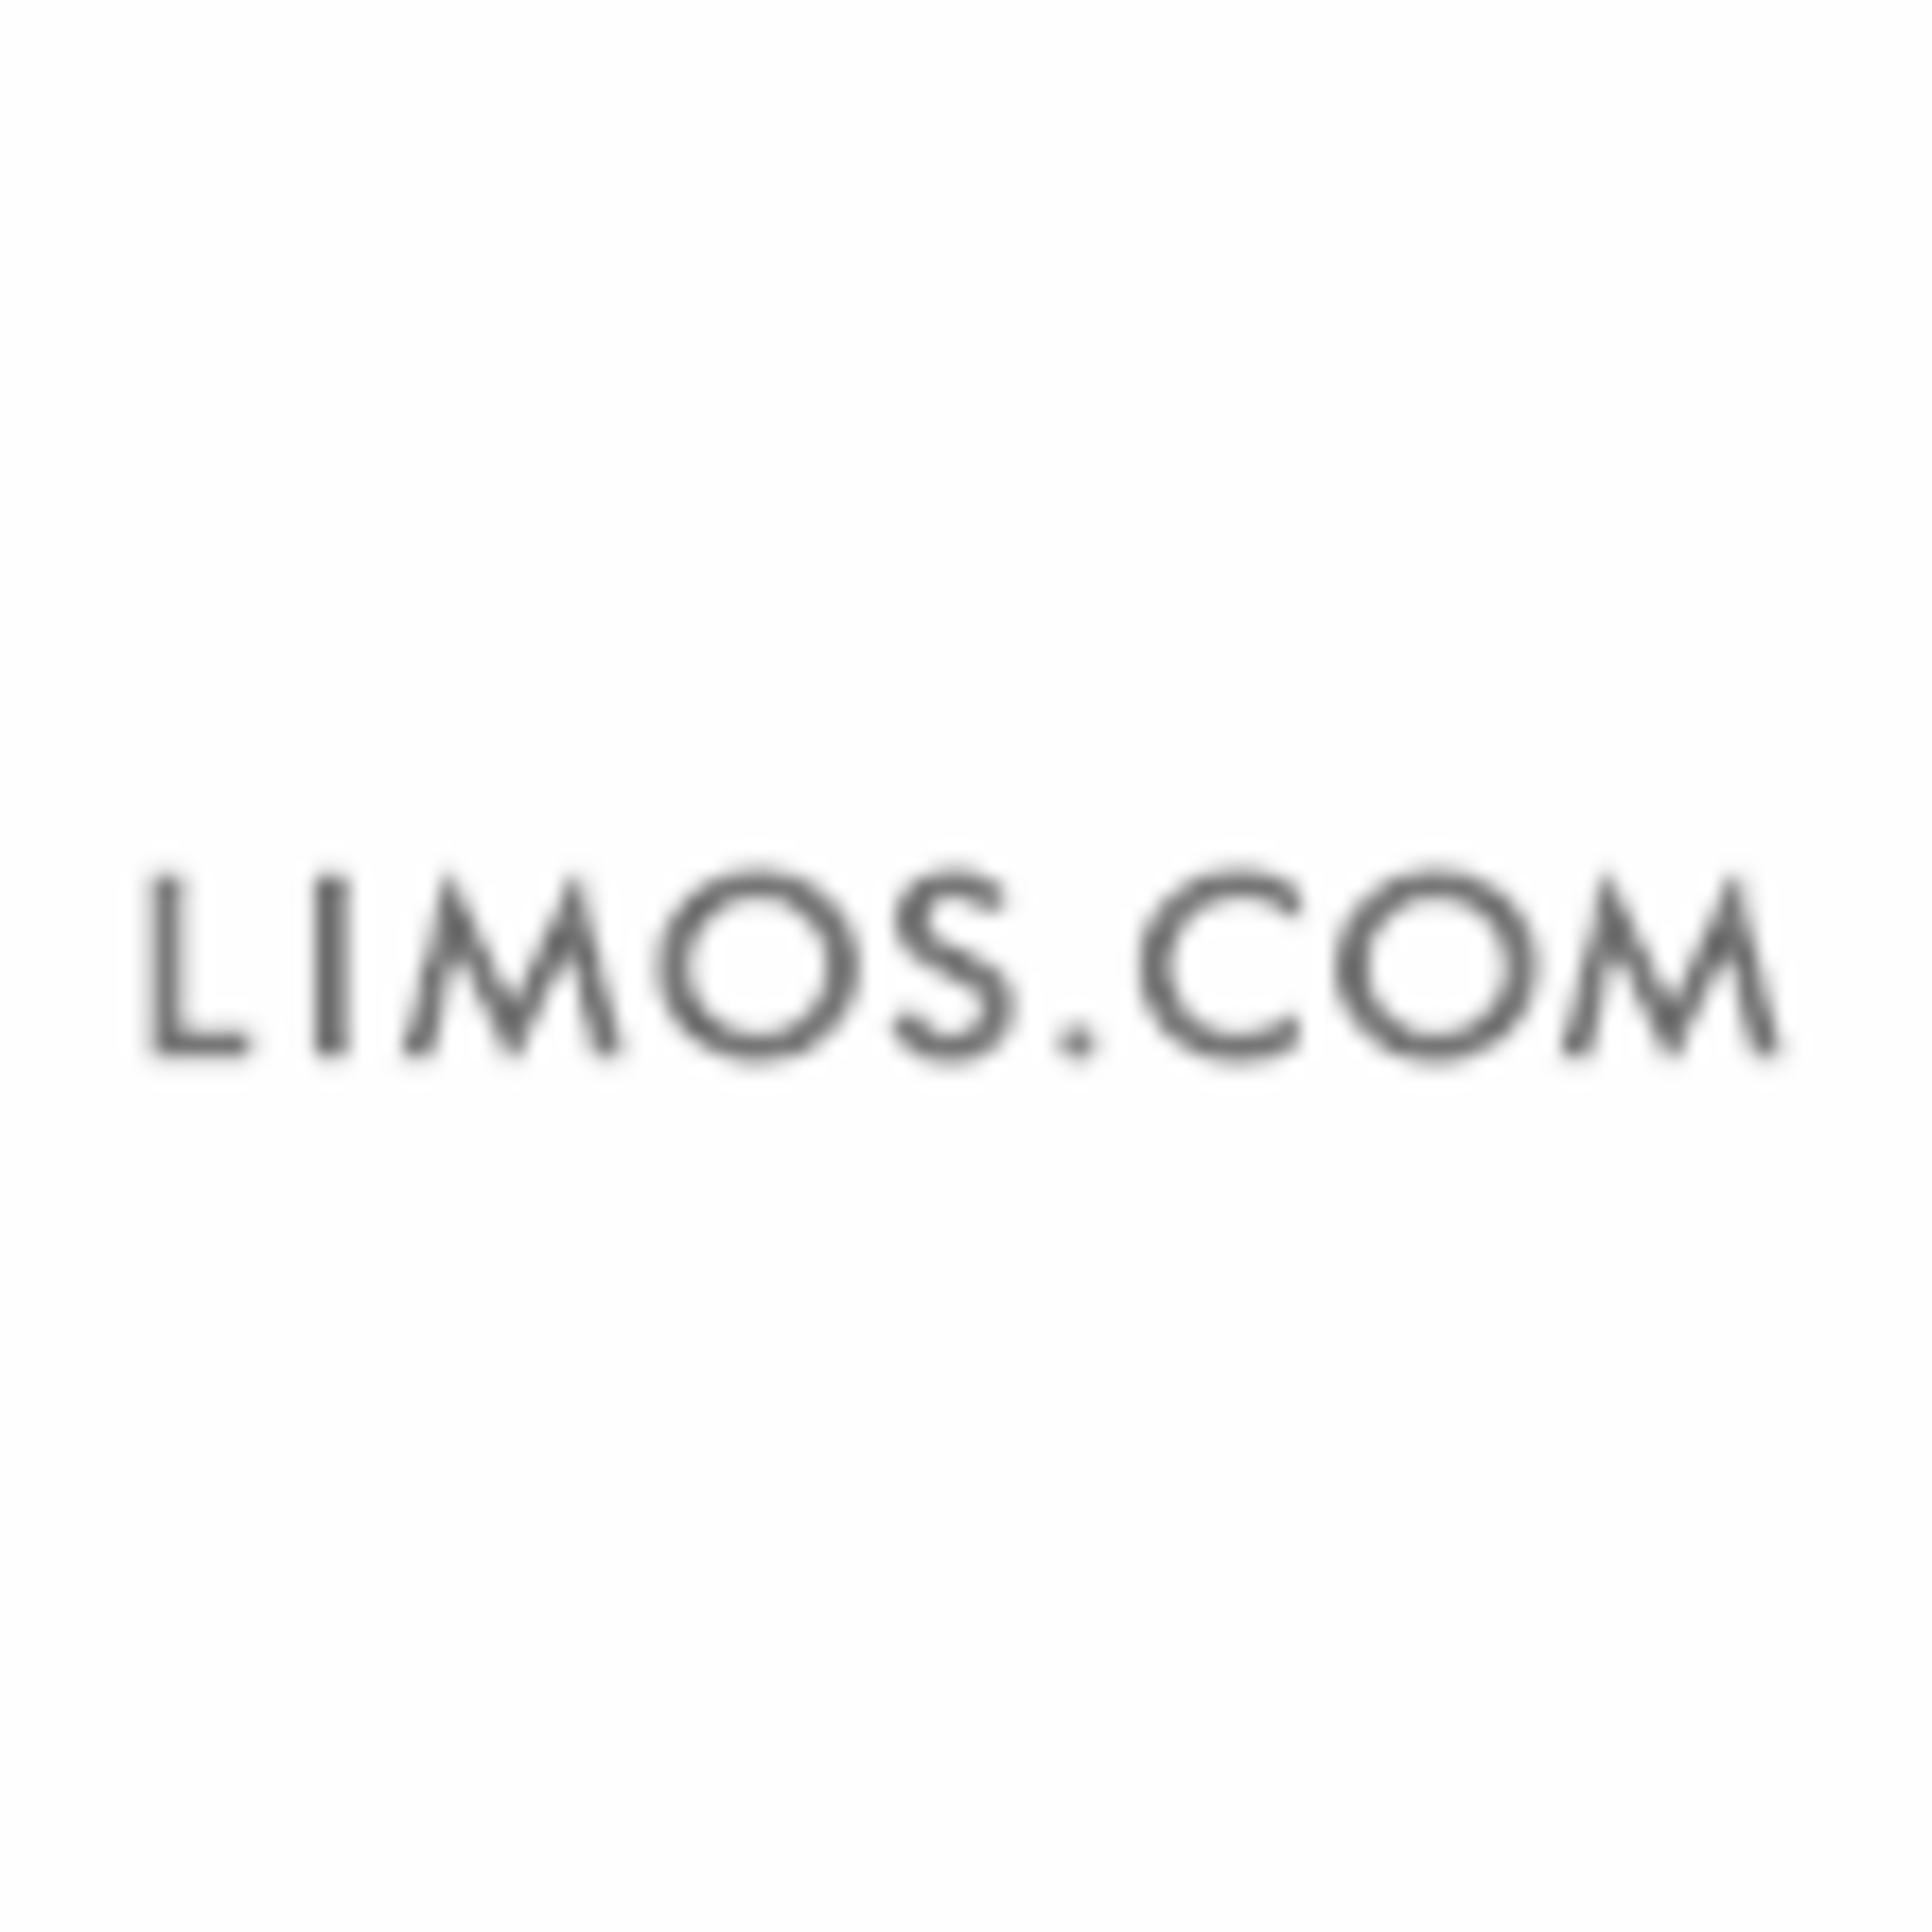 Limos.com Code